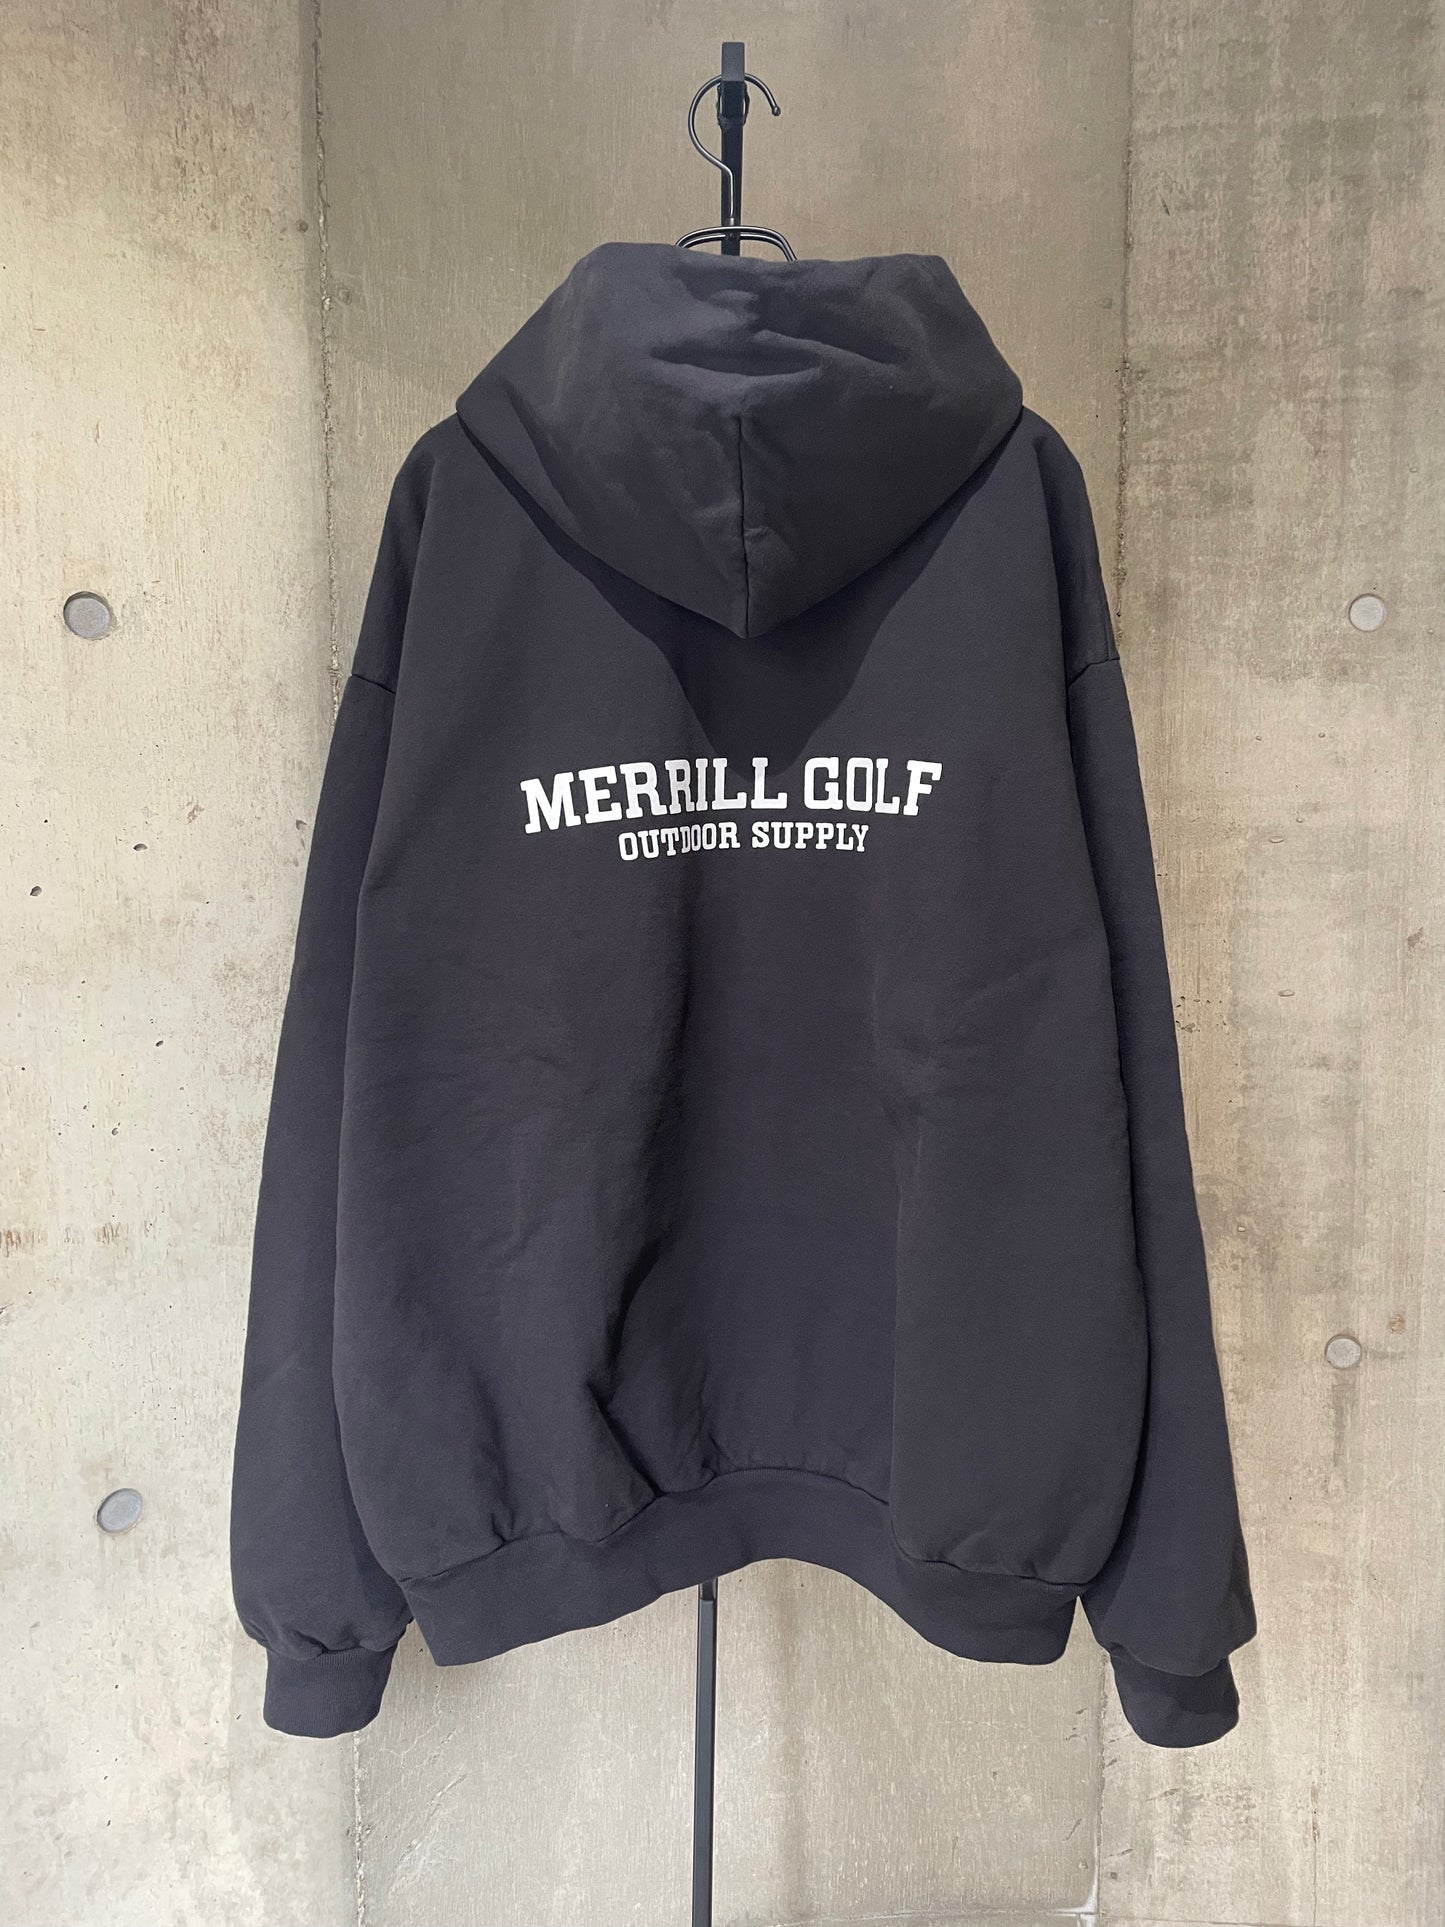 MERRILL GOLF - OUTDOOR SUPPLY HOODIE